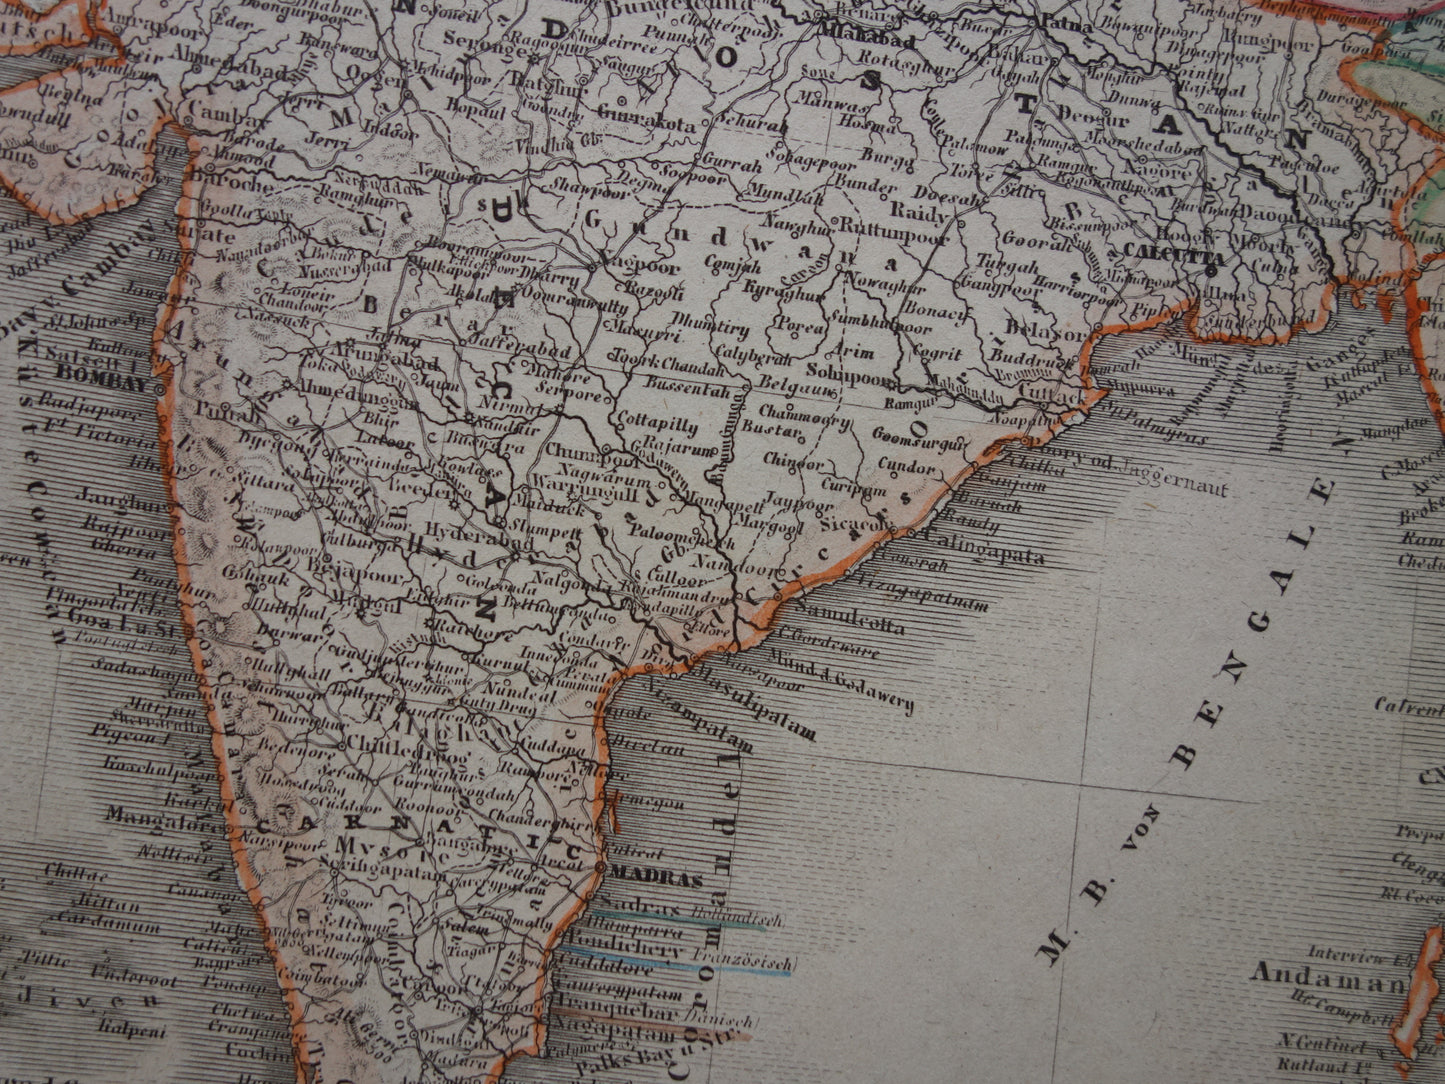 INDIA Oude kaart van India en Indochina uit 1849 originele antieke landkaart zuidoost Azië - vintage kaarten